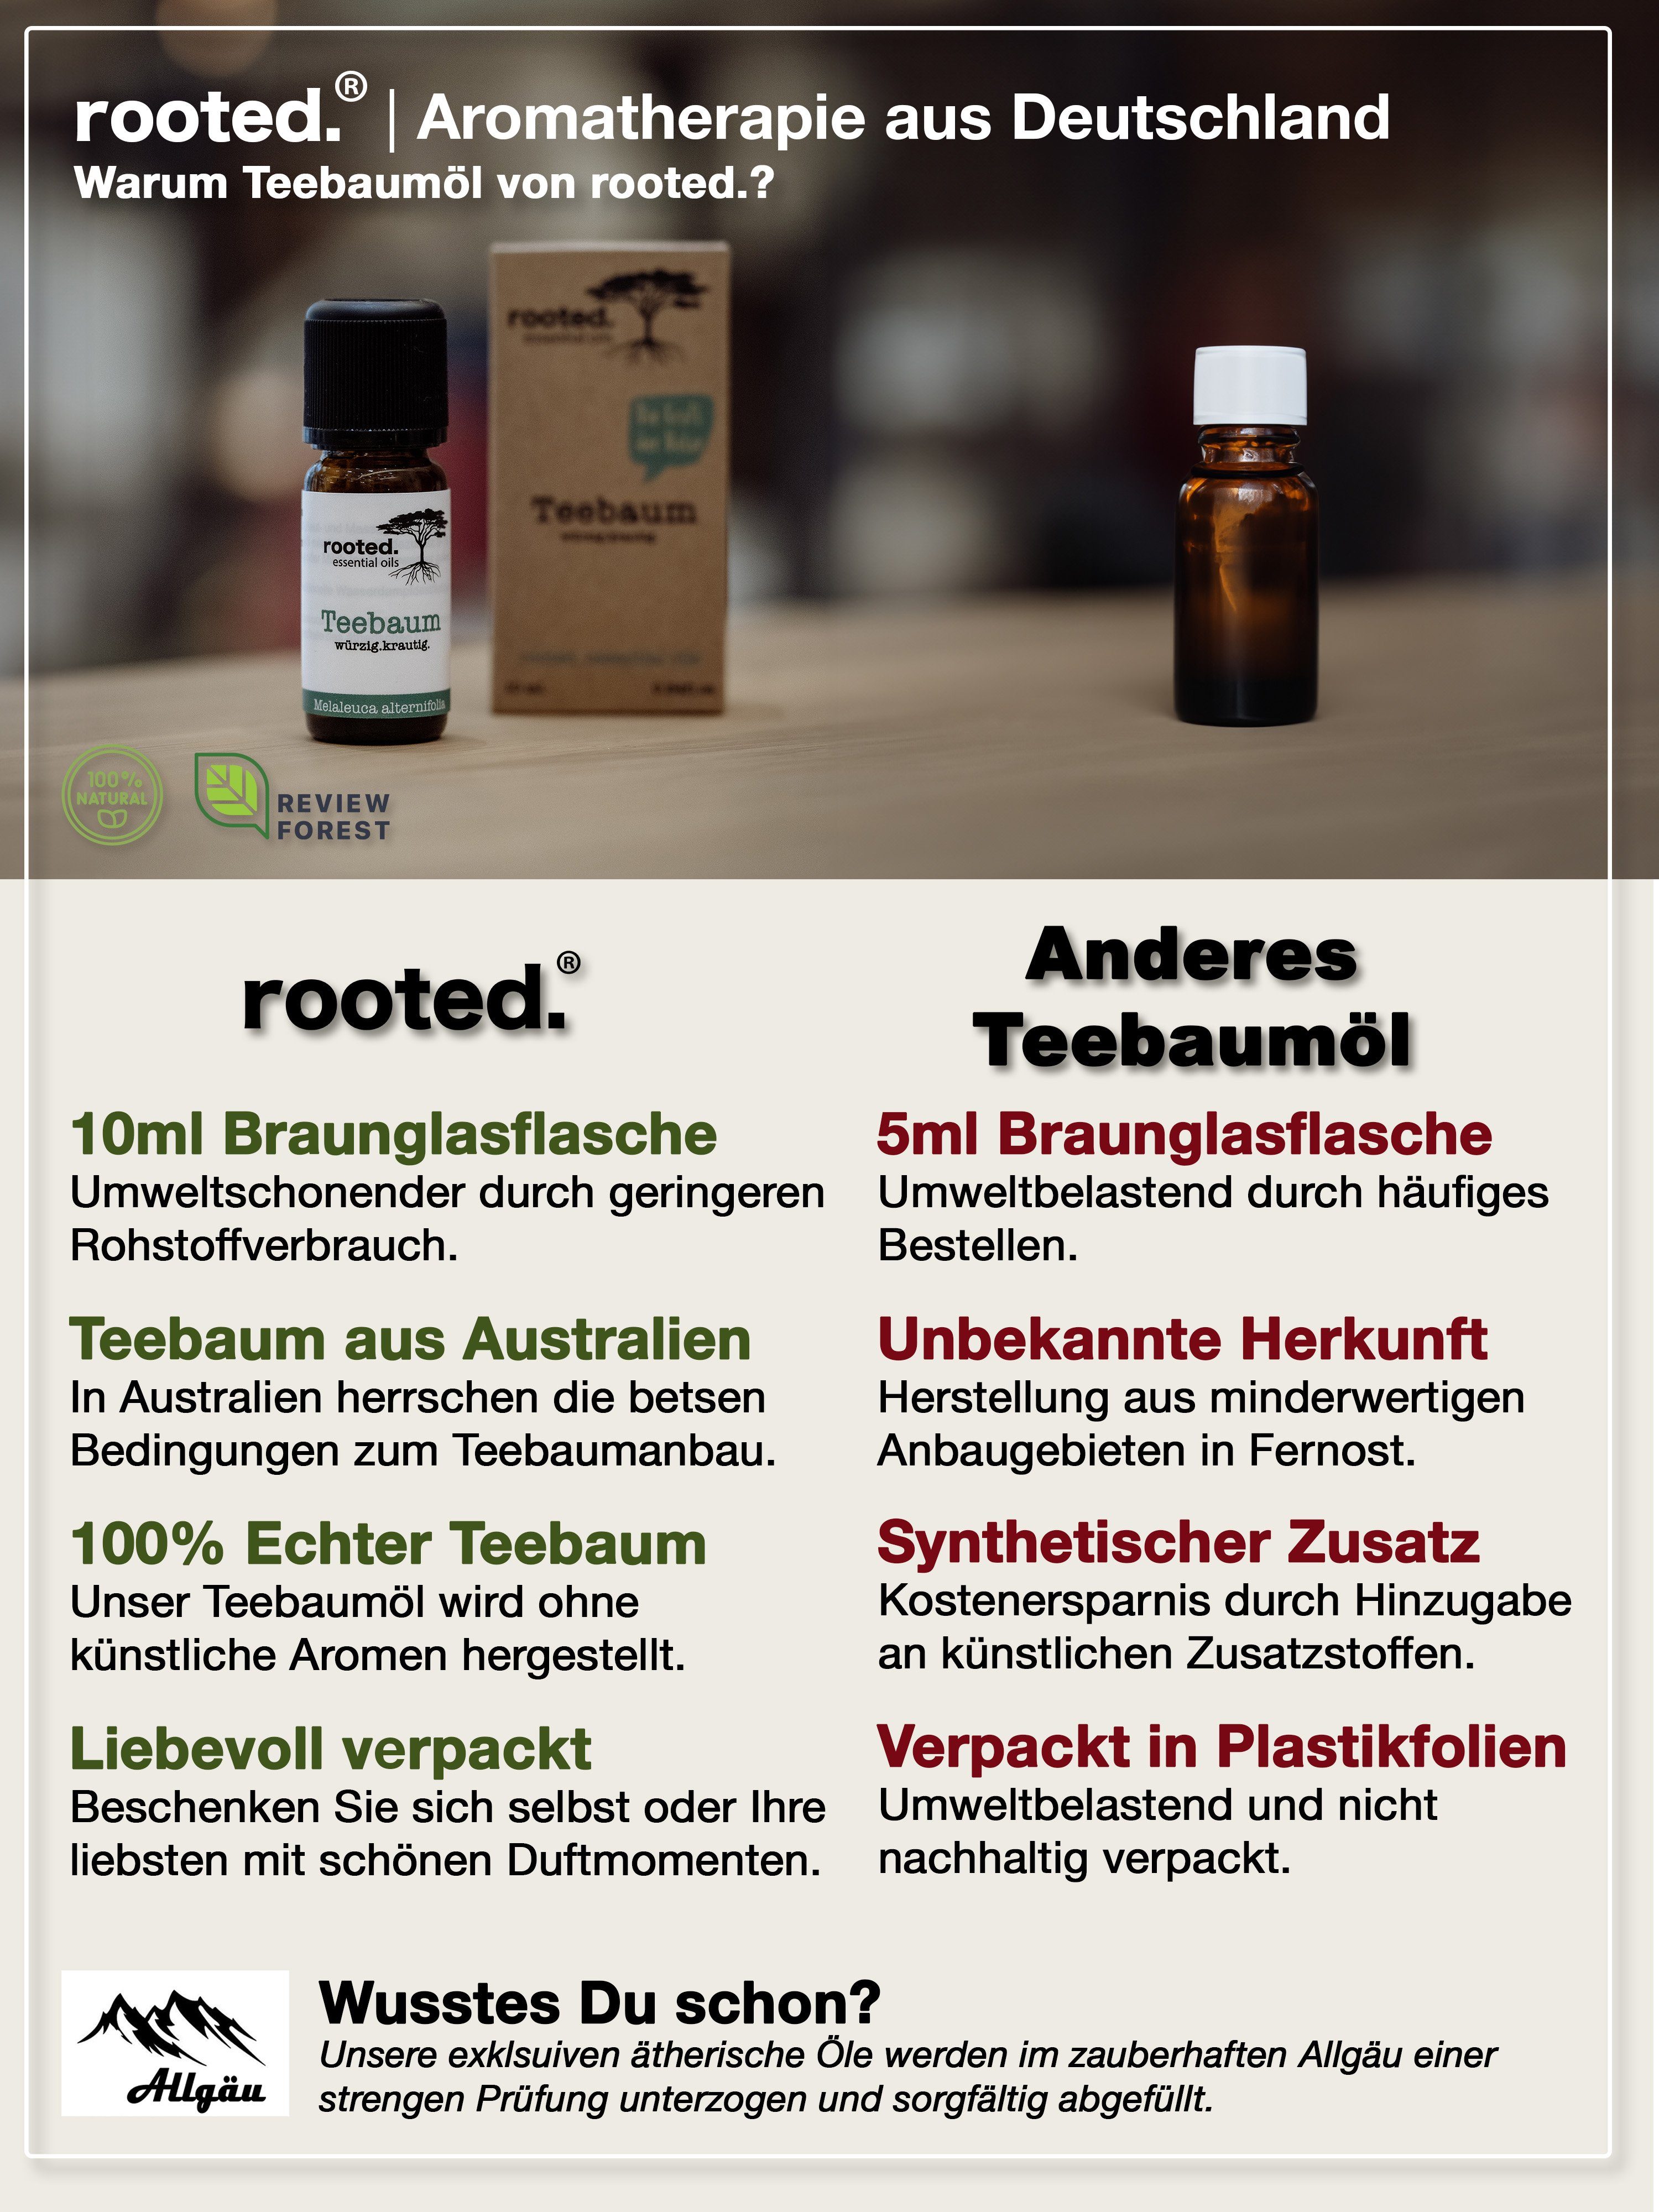 rooted. 10ml Körperöl alternifolia Teebaumöl, rooted.®, ätherisches Melaleuca